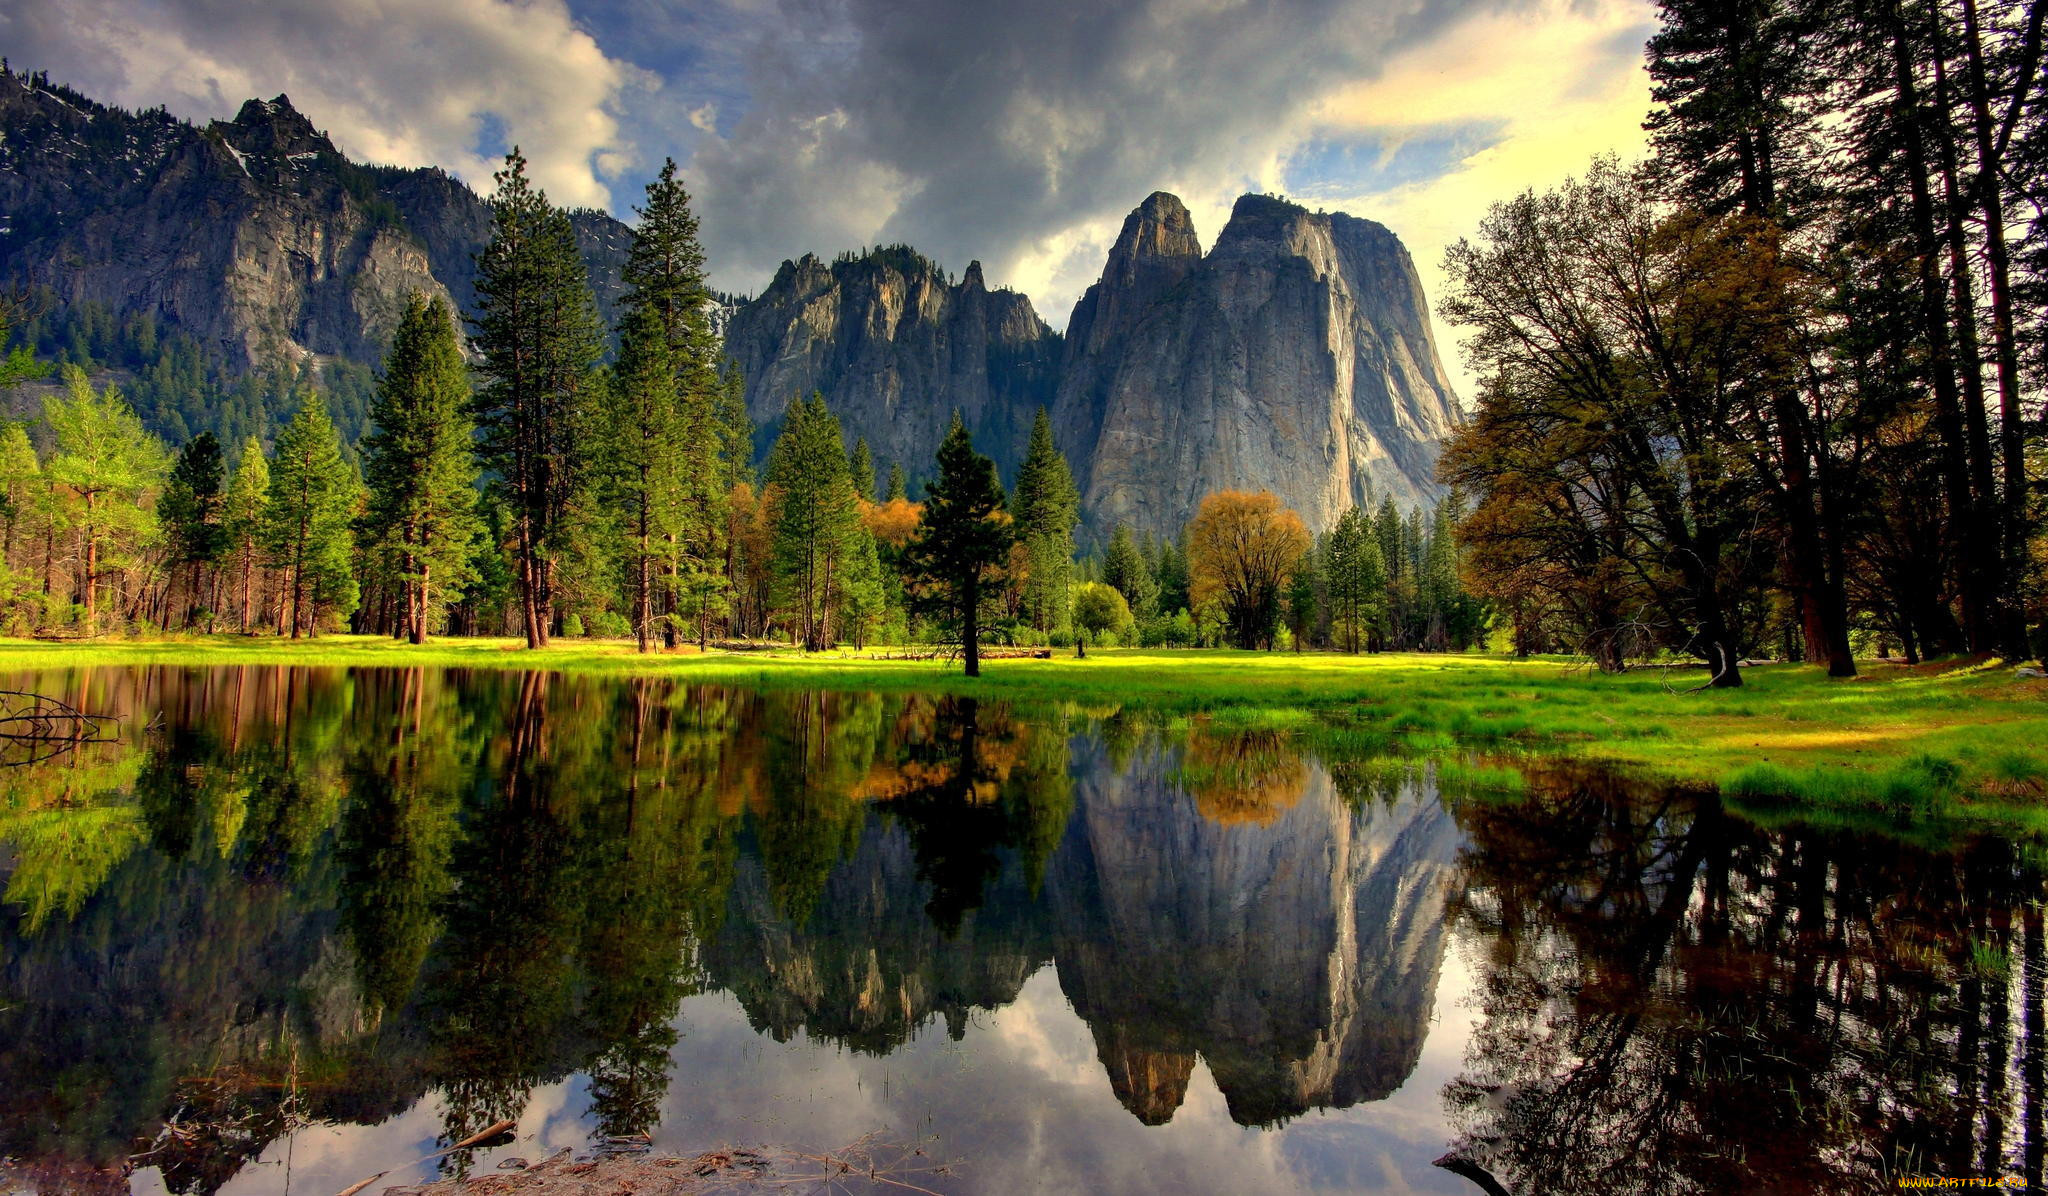 New best com. Национальный парк Йосемити, США. Йосемитский национальный парк Калифорния. Йосемити национальный парк США обои. 4. Национальный парк Йосемити США.